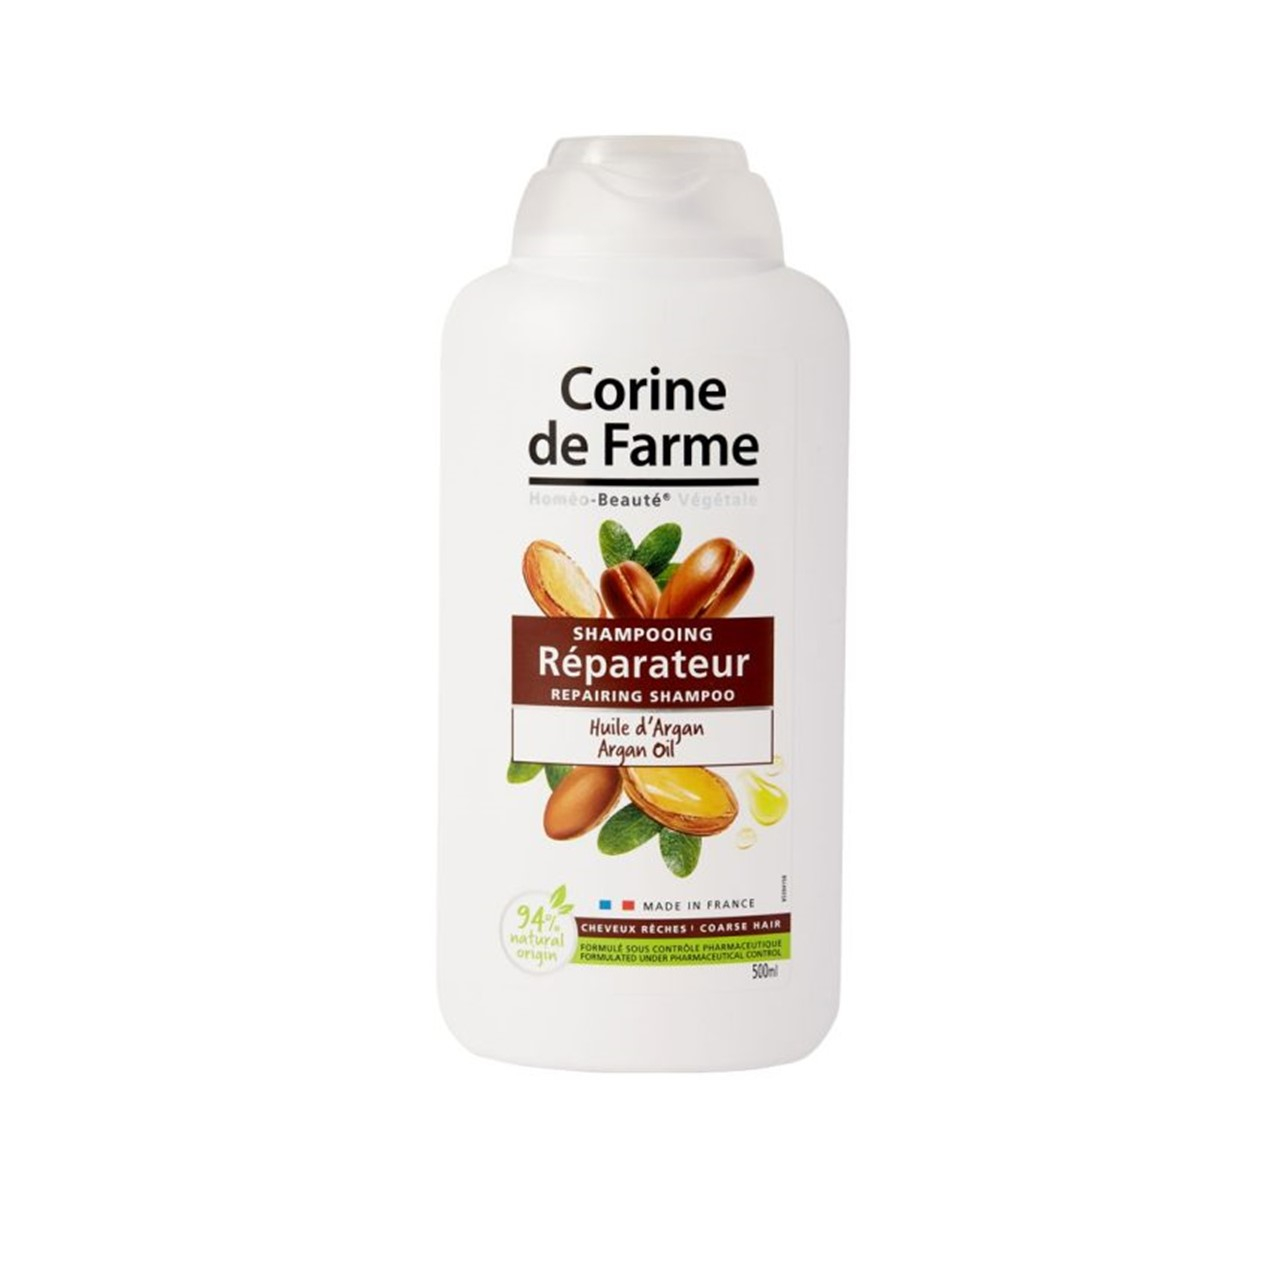 Corine de Farme Repairing Shampoo With Argan Oil 500ml (16.9floz)